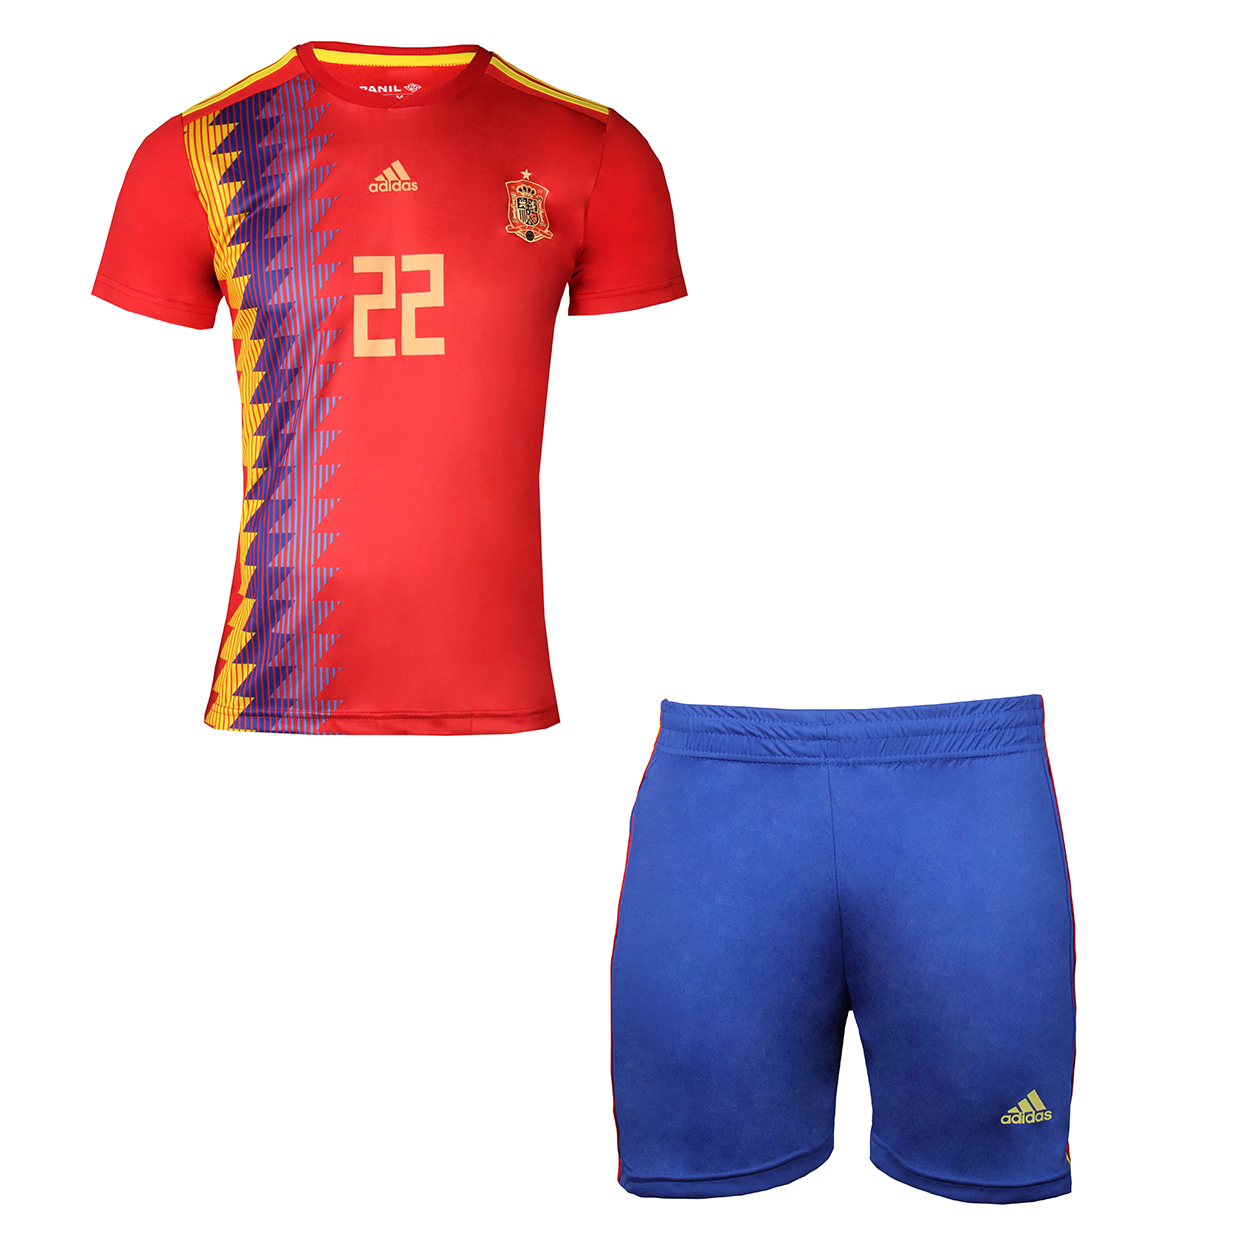 ست تی شرت و شلوارک ورزشی پسرانه طرح تیم اسپانیا کد 13047